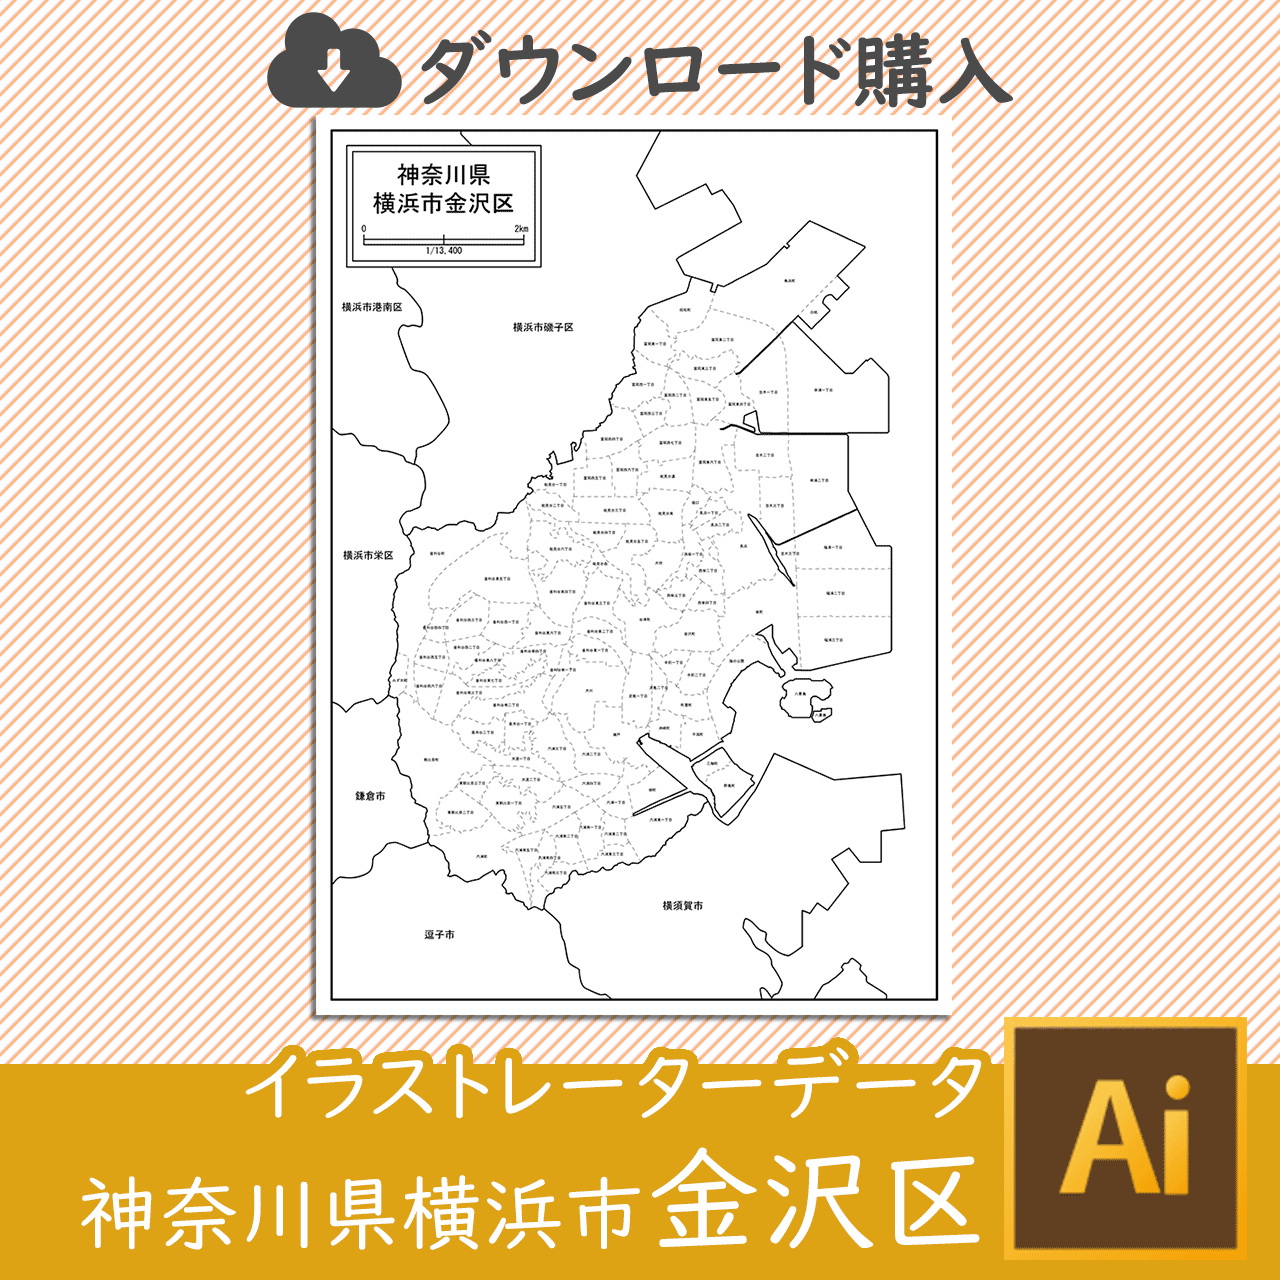 横浜市金沢区の白地図のサムネイル画像